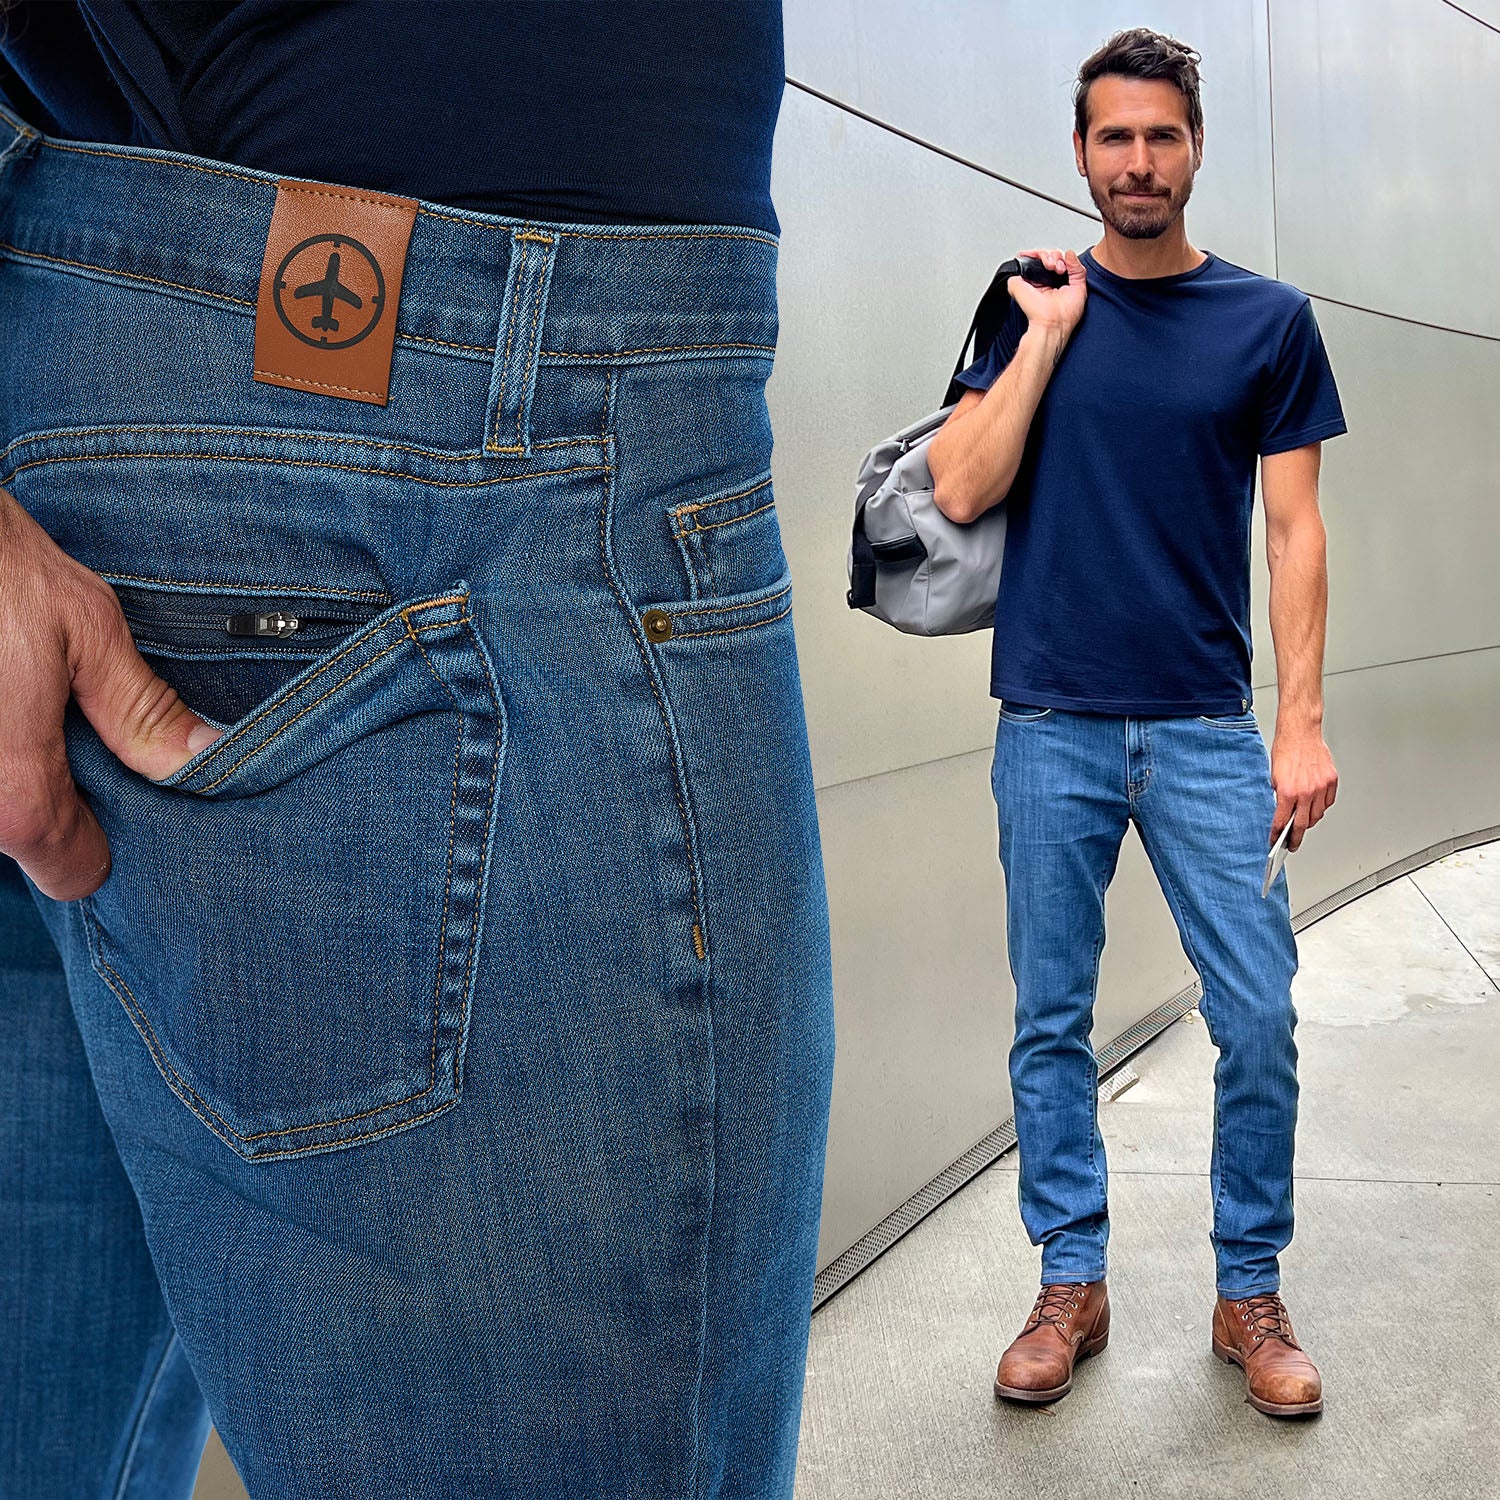 Aviator Men's Selvedge Travel Jeans